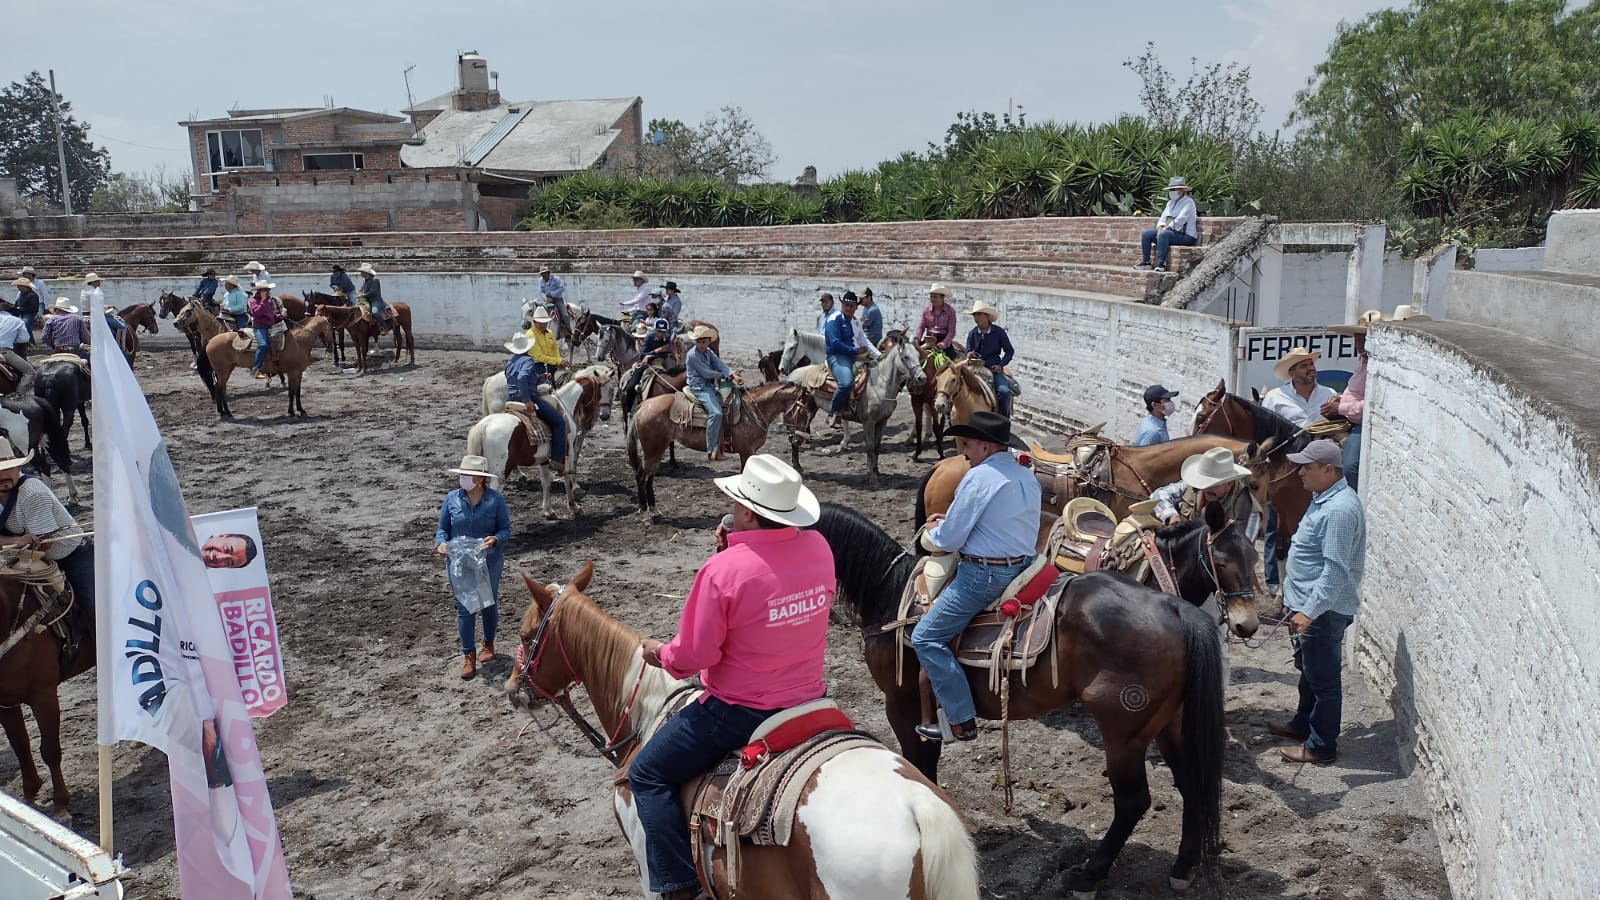 Ricardo Badillo encabeza cabalgata con más de 200 jinetes en Puerta de Palmillas